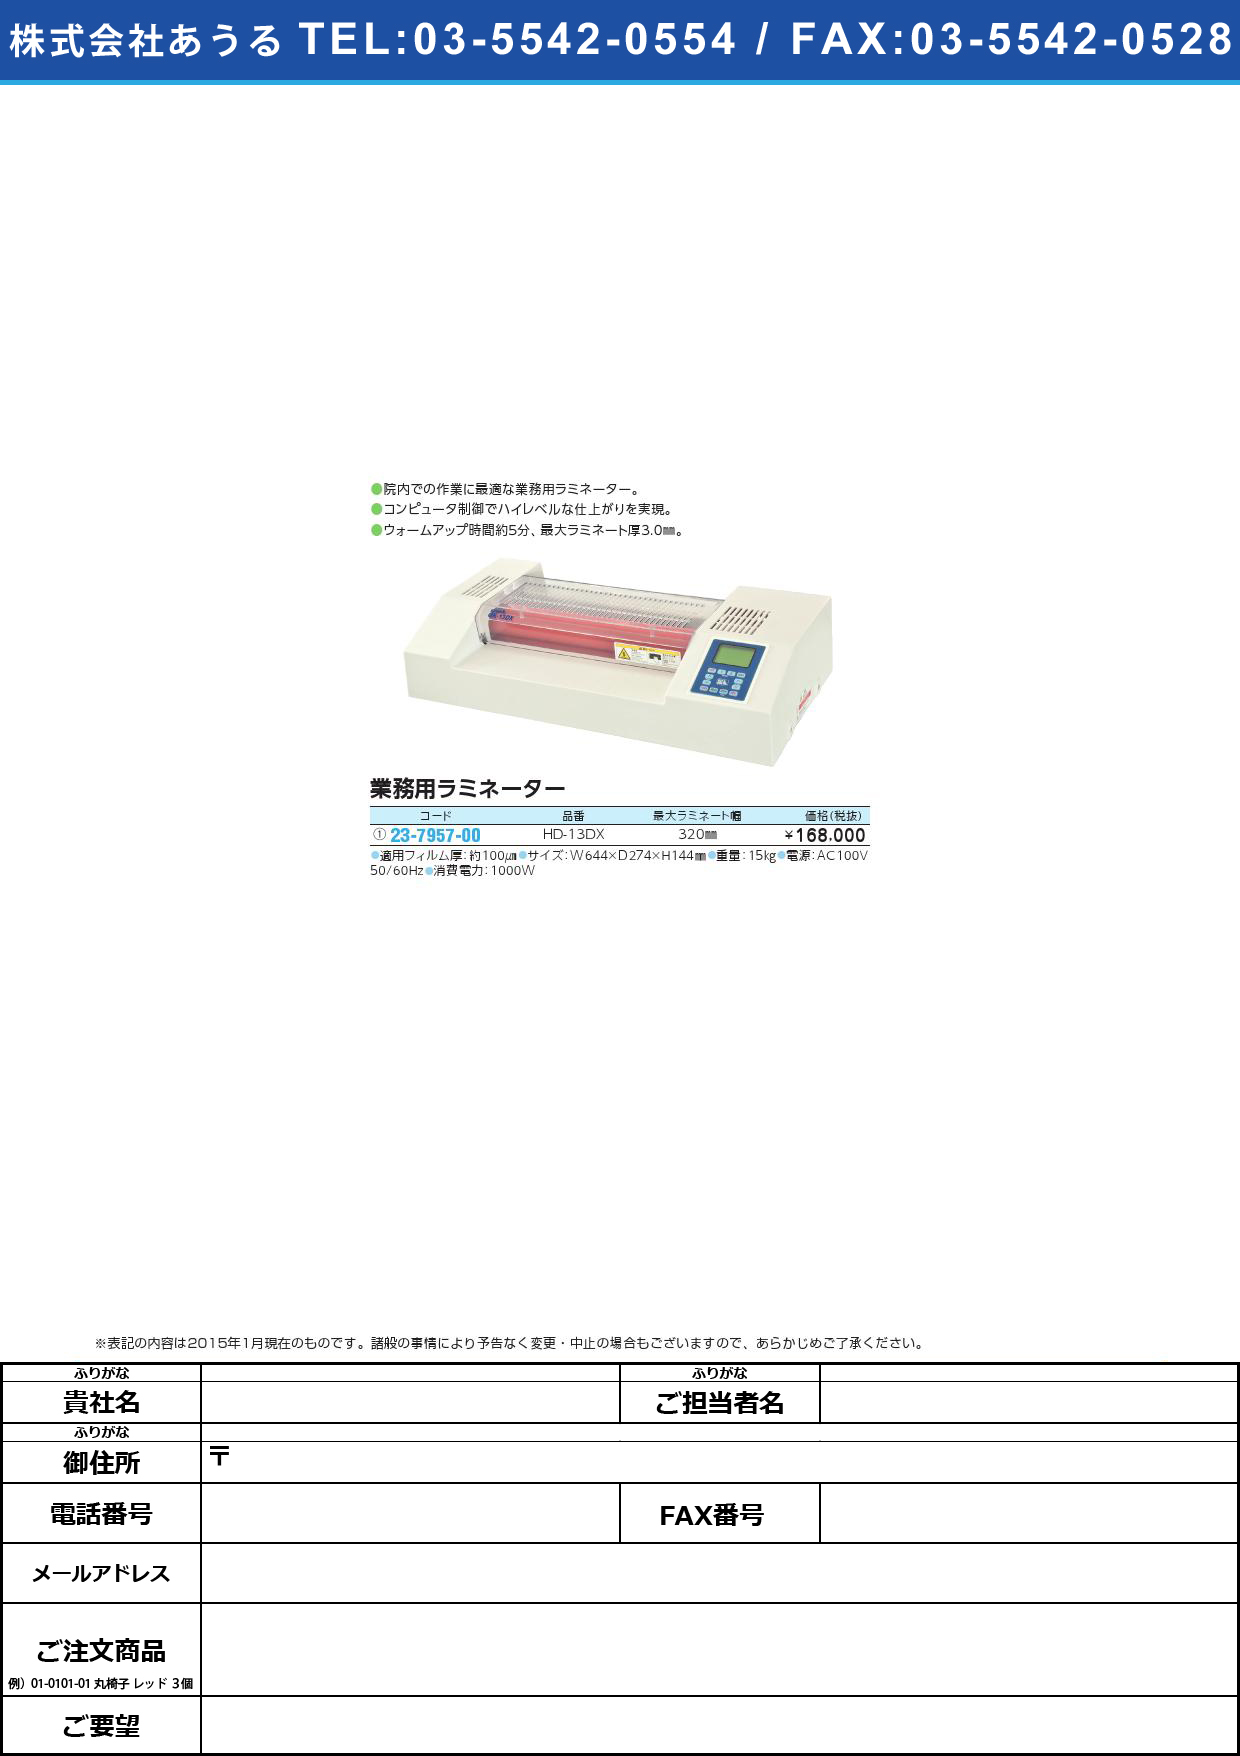 業務用ラミネーター ｷﾞｮｳﾑﾖｳﾗﾐﾈｰﾀｰ(23-7957-00)HD-13DX【1台単位】